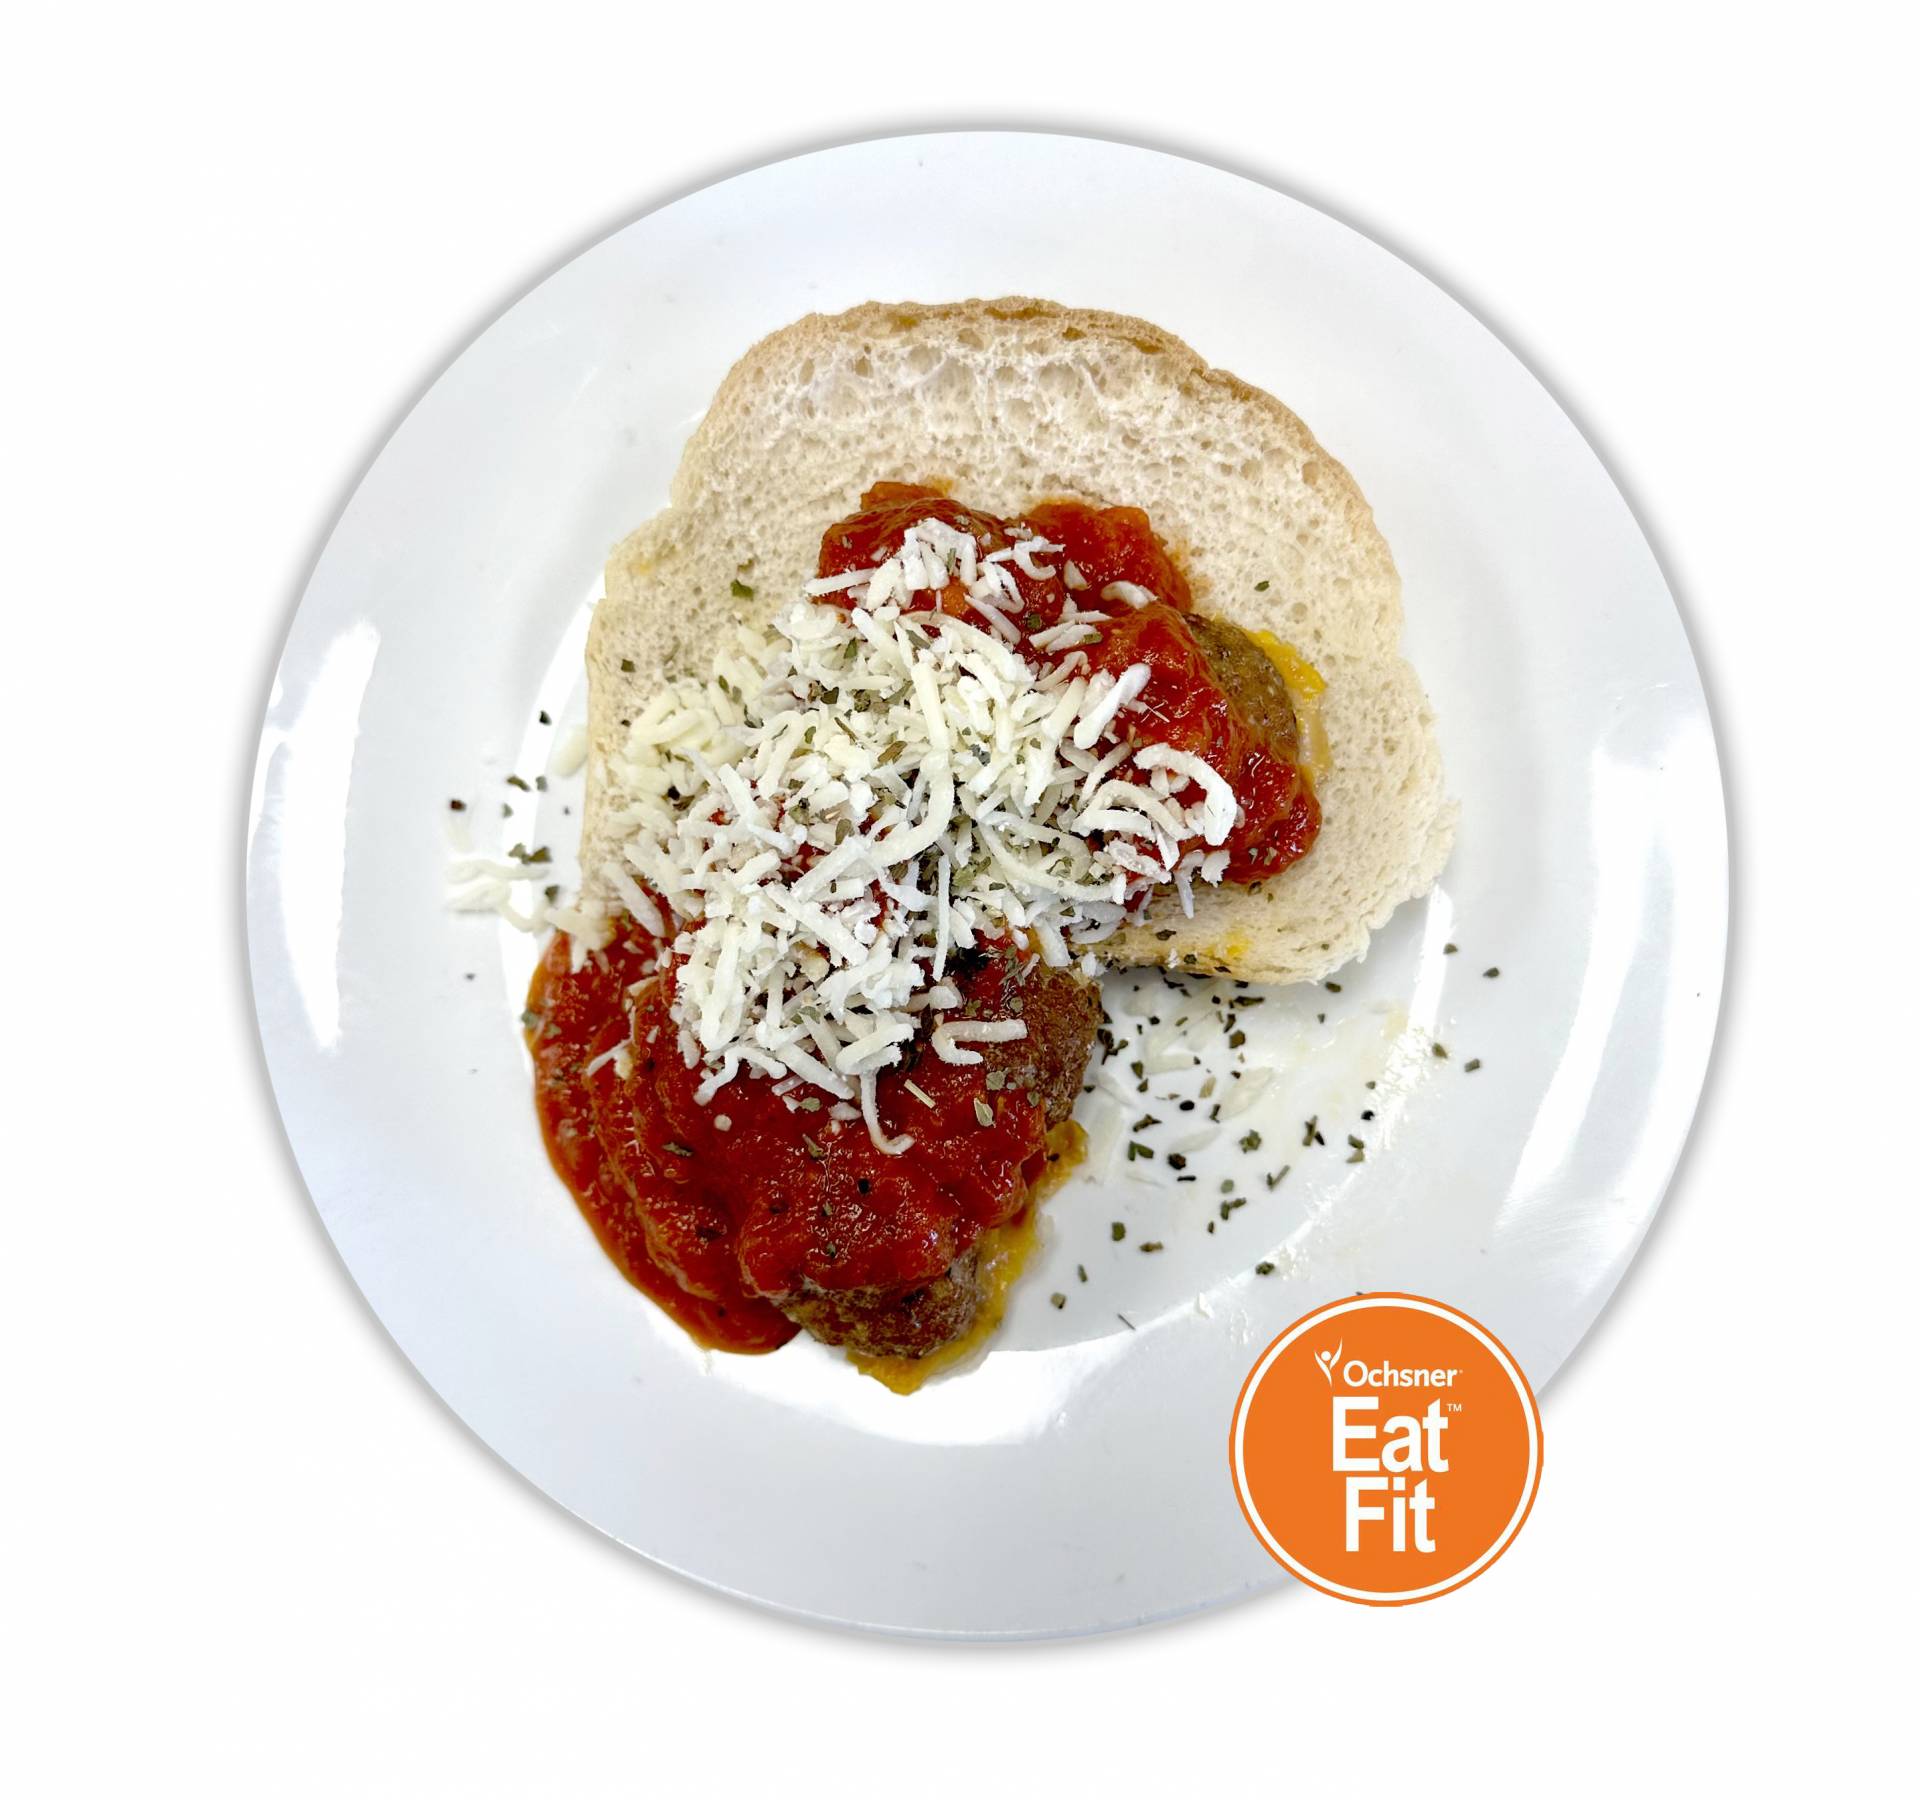 Italian Turkey Meatball on 1 Net Carb Bread - Keto